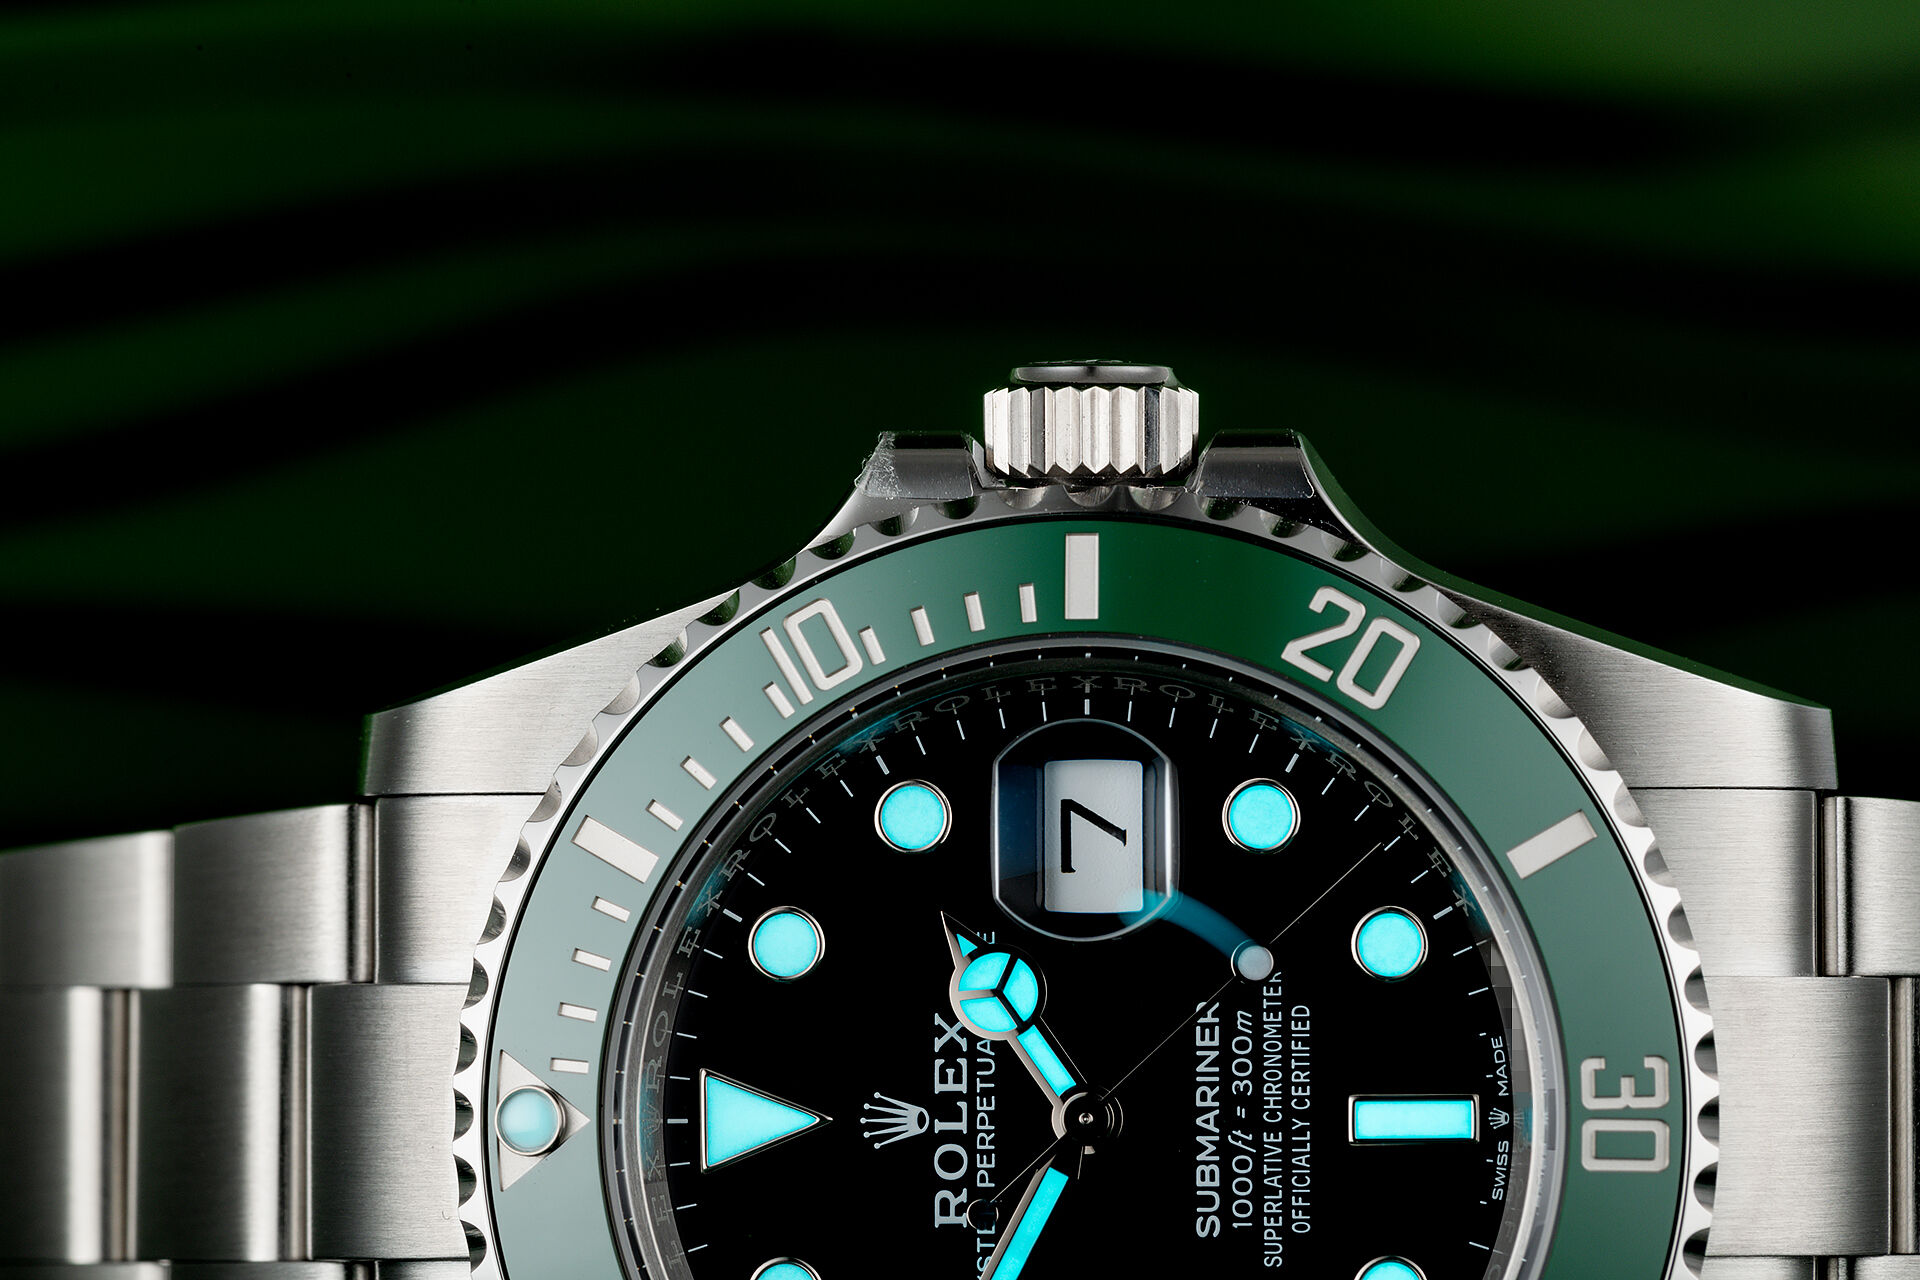 ref 126610LV | Brand New 5 Year Warranty  | Rolex Submariner Date